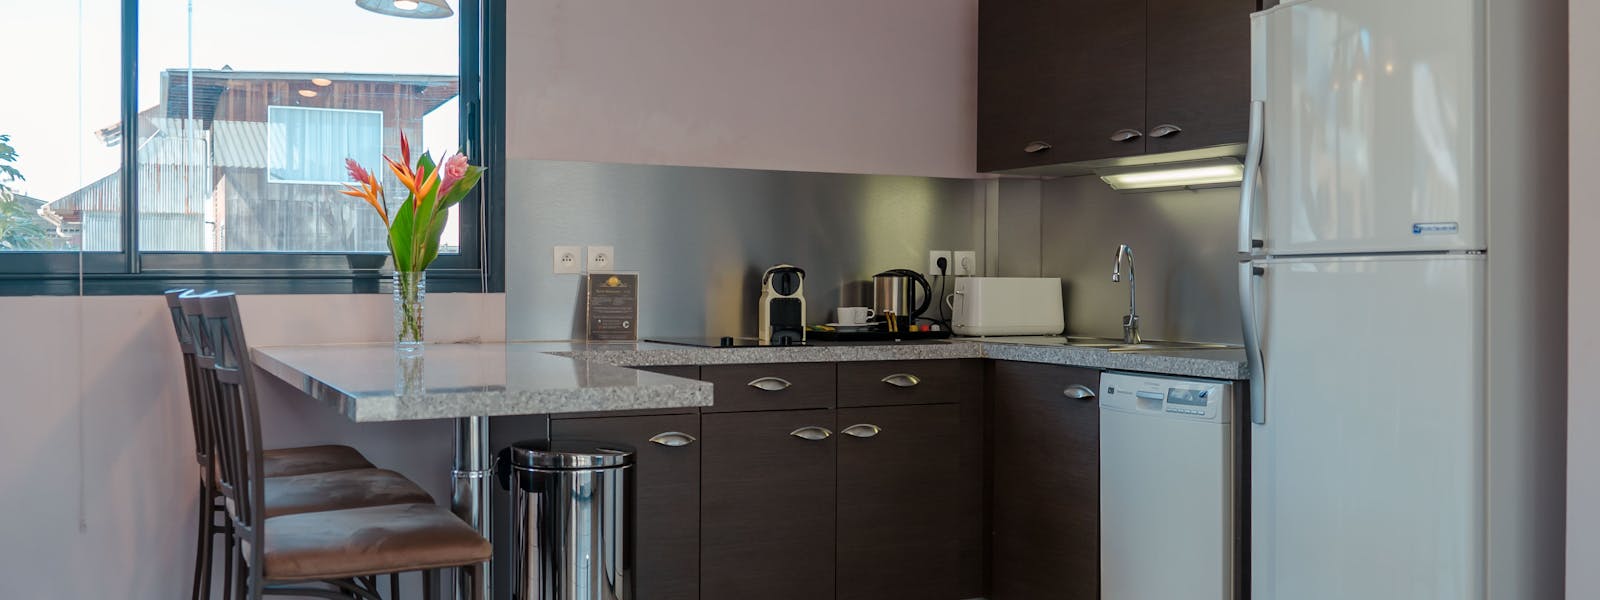 fully equipped kitchen in a suite at Apartment hotel La Belle Etoile, cuisine équipée d'une suite à La Belle Etoile